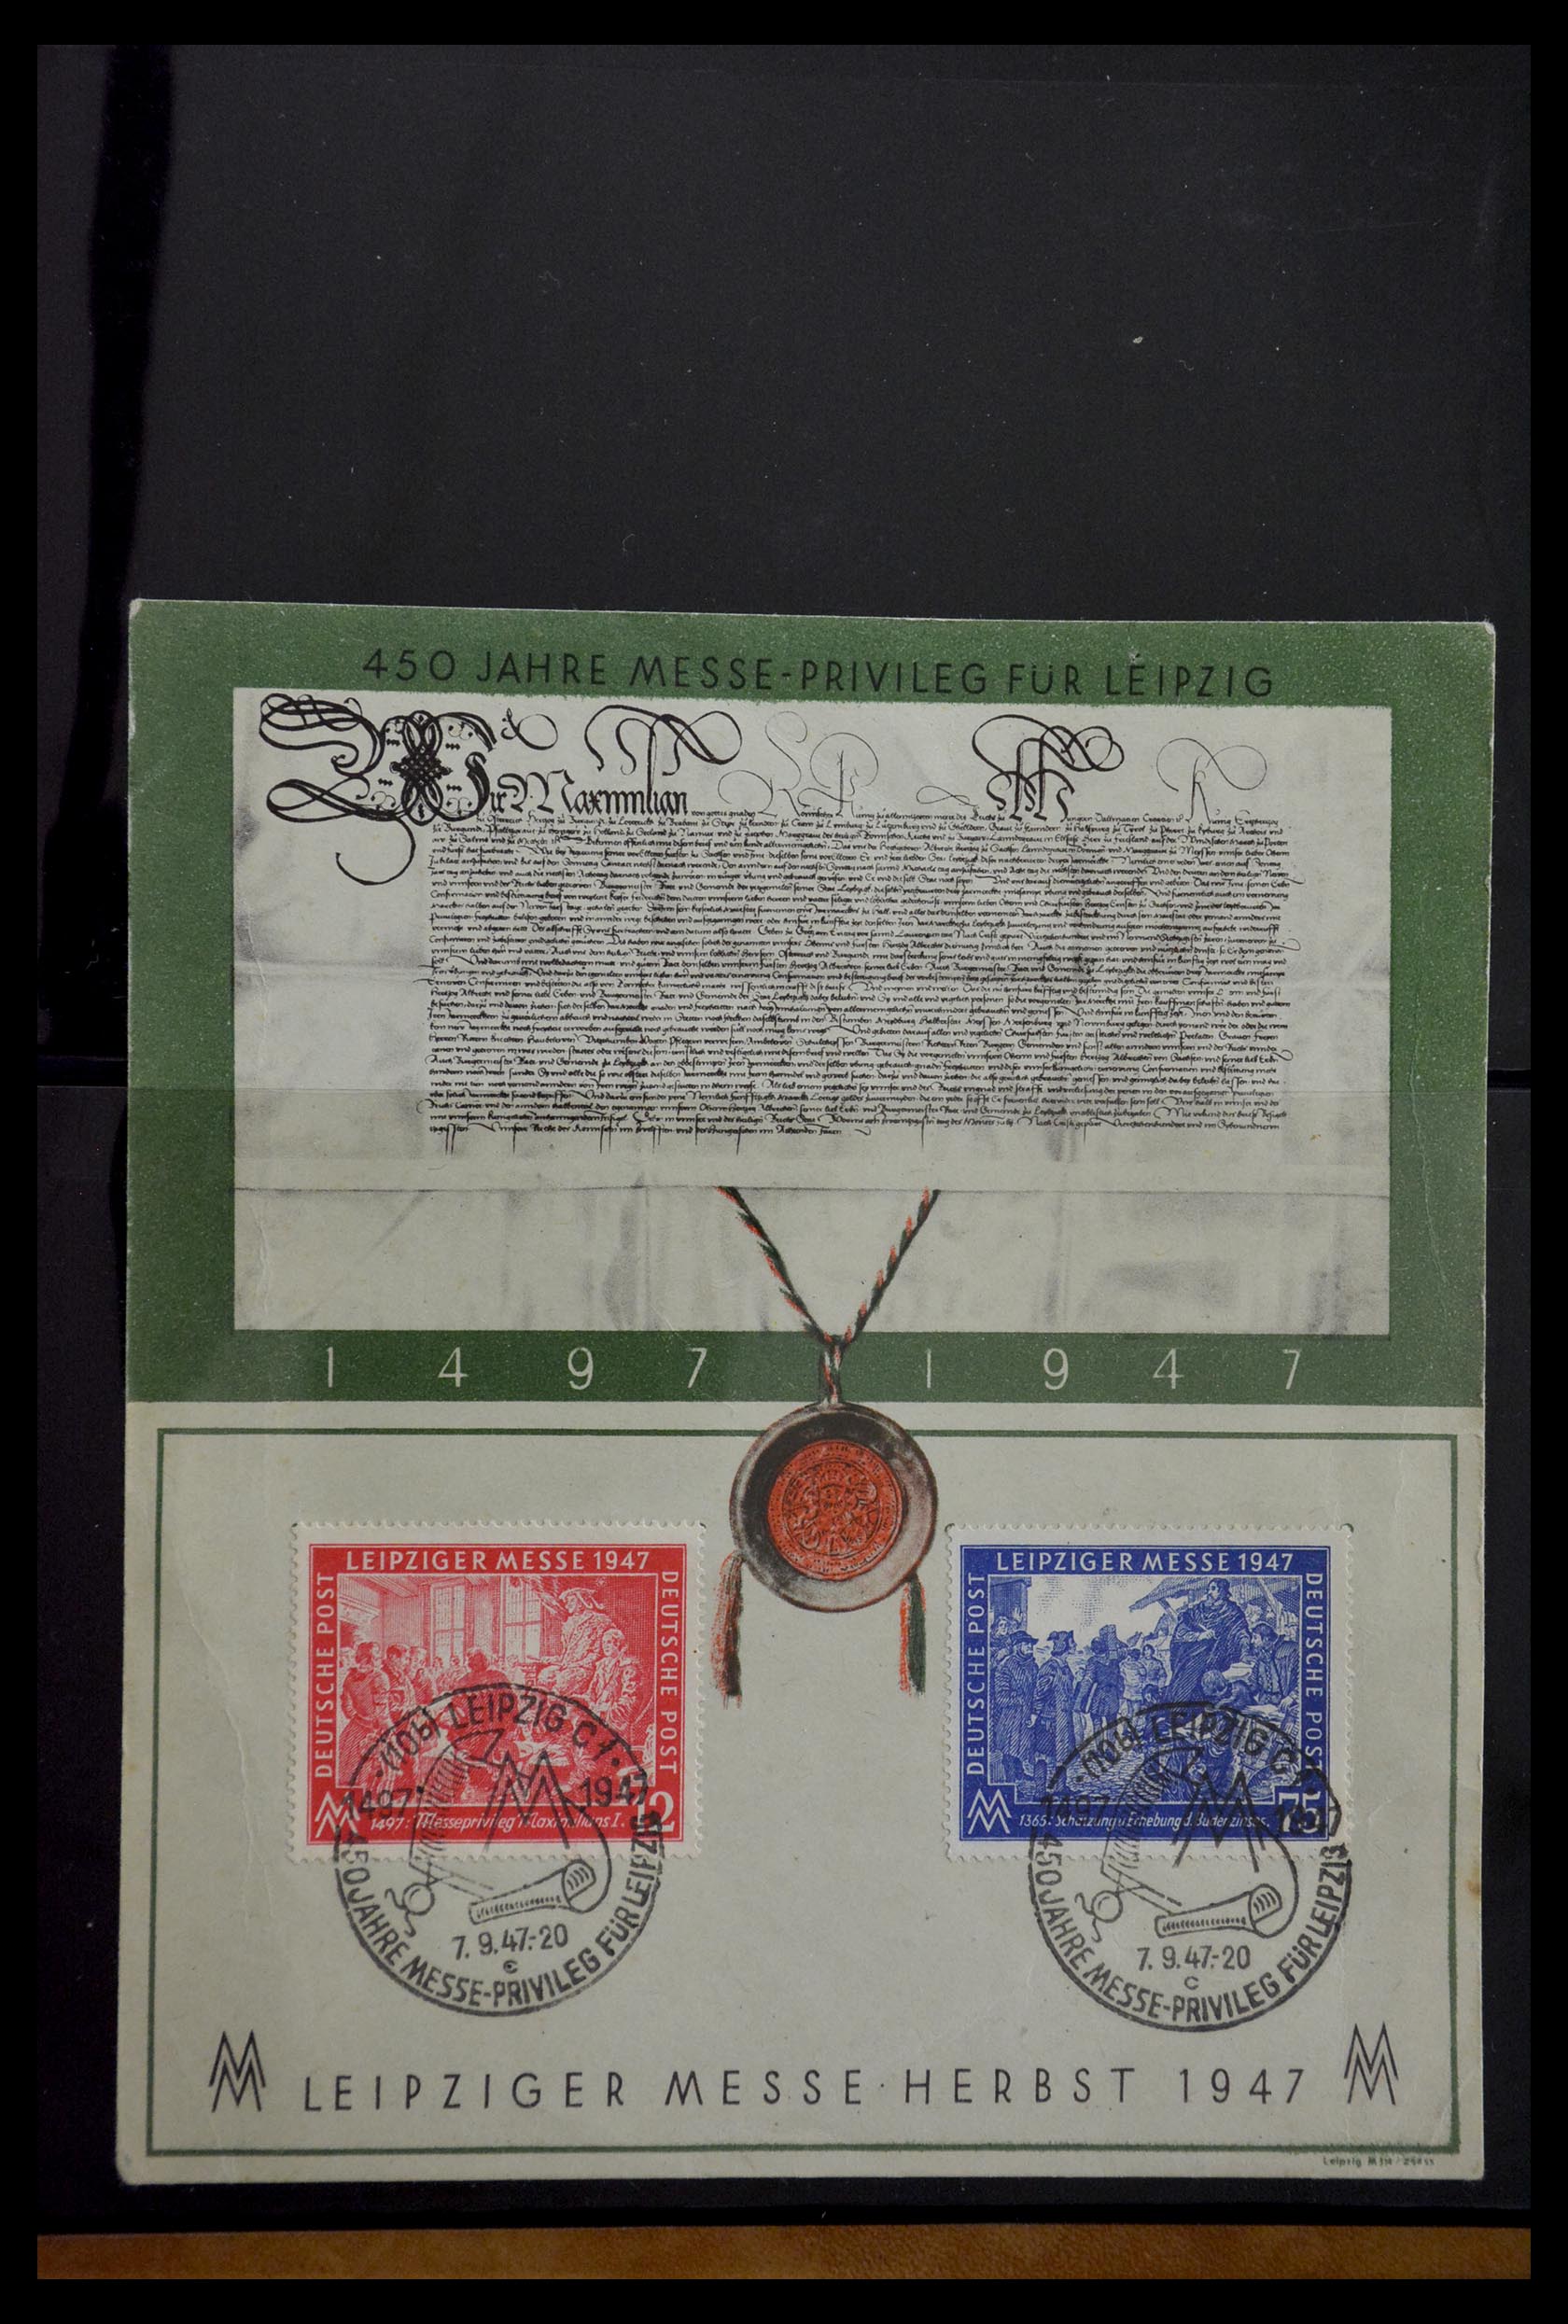 29382 004 - 29382 Duitsland brieven en FDC's 1936-1965.